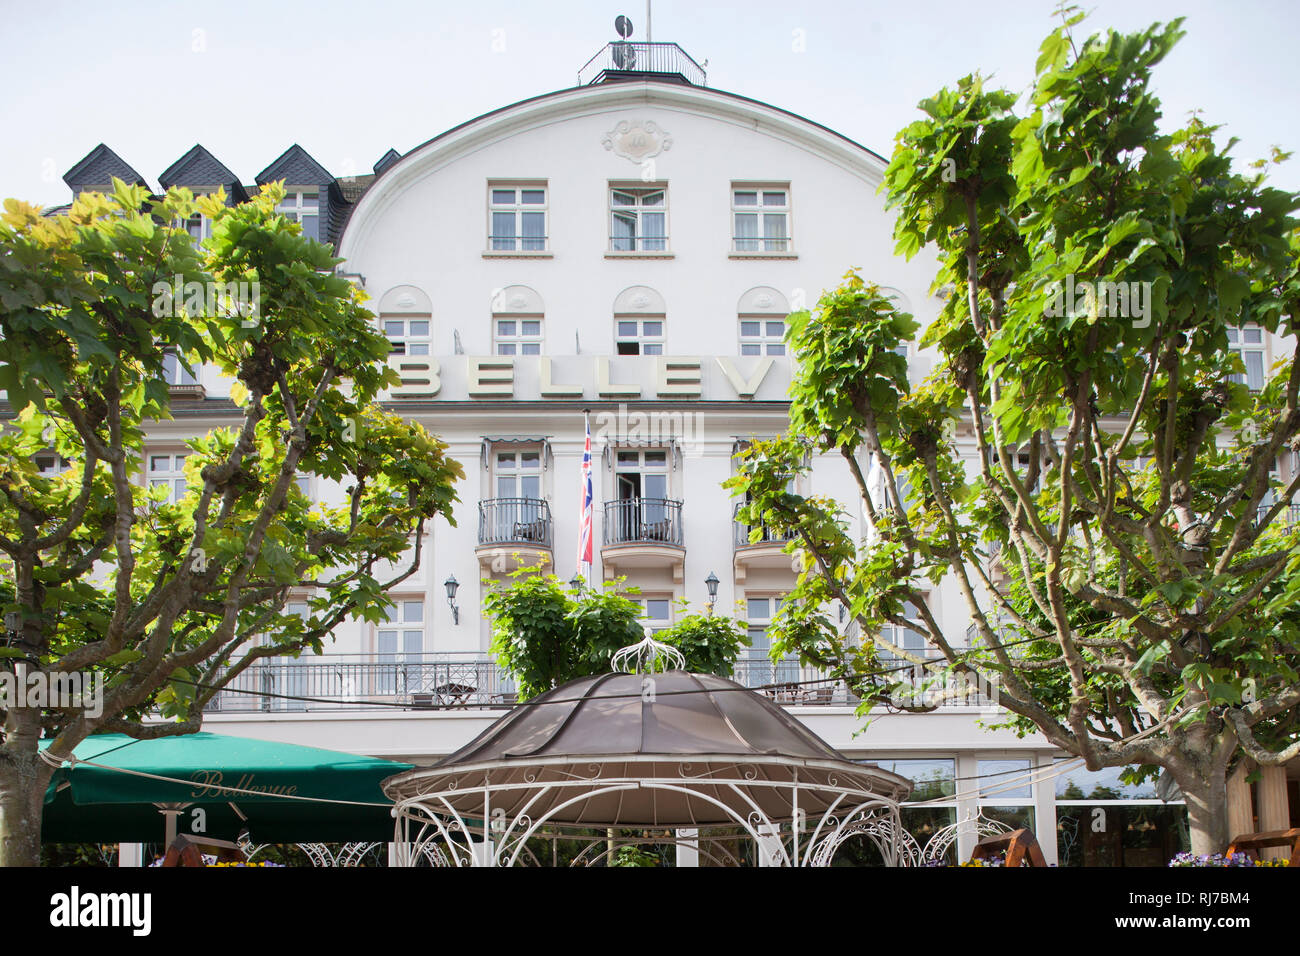 Historisches Hotel Bellevue am Rhein, Boppard, Unesco Weltkulturerbe Oberes Mittelrheintal, Rheinland-Pfalz, Deutschland, Stockfoto